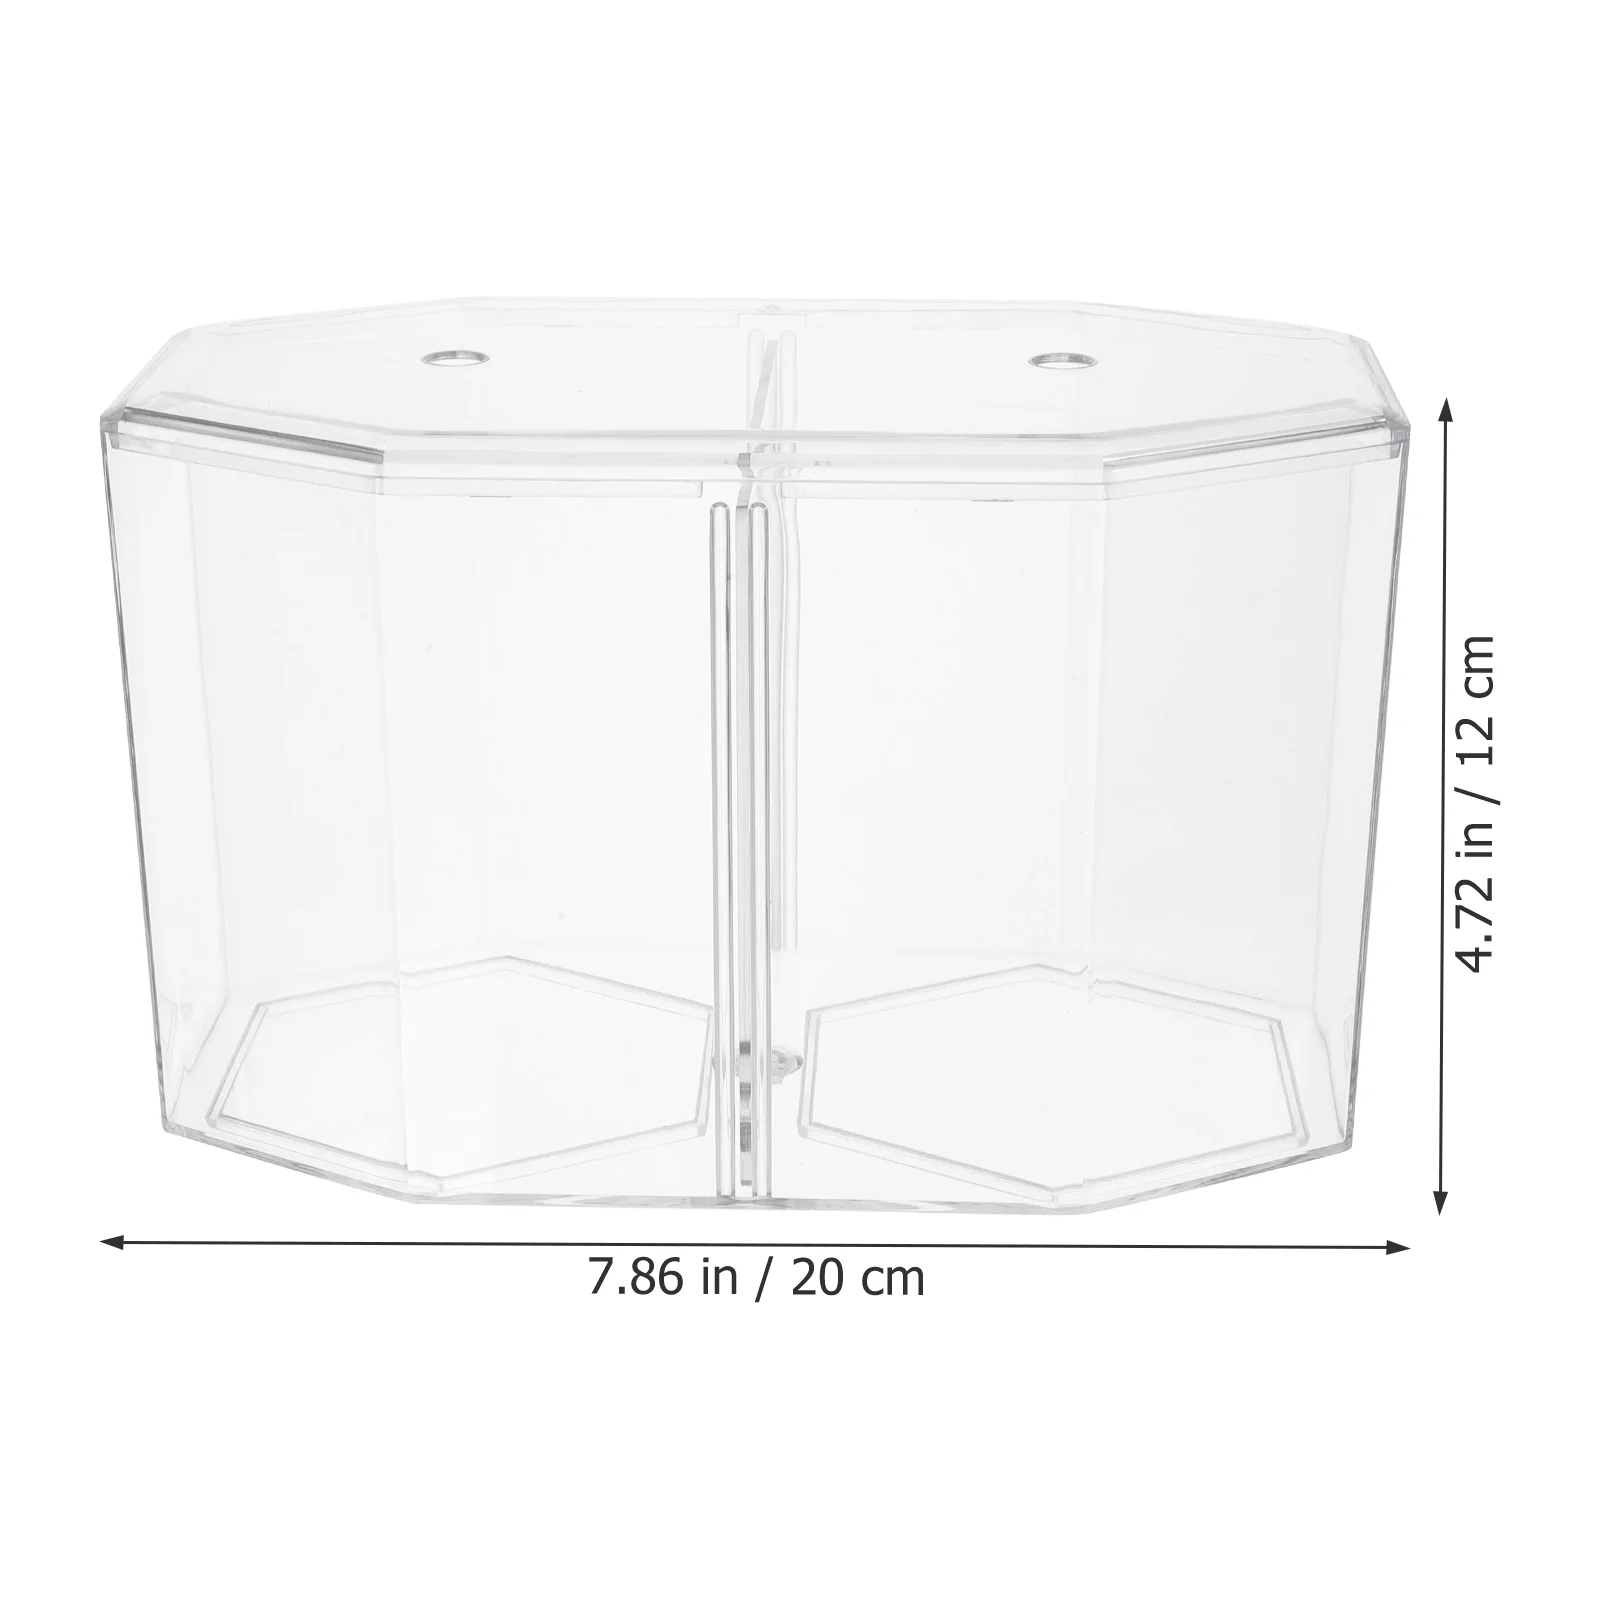 Восьмиугольный контейнер для разведения креветок Бетта, аквариум с золотыми рыбками, акриловая перегородка, прозрачный аксессуар Изображение 1